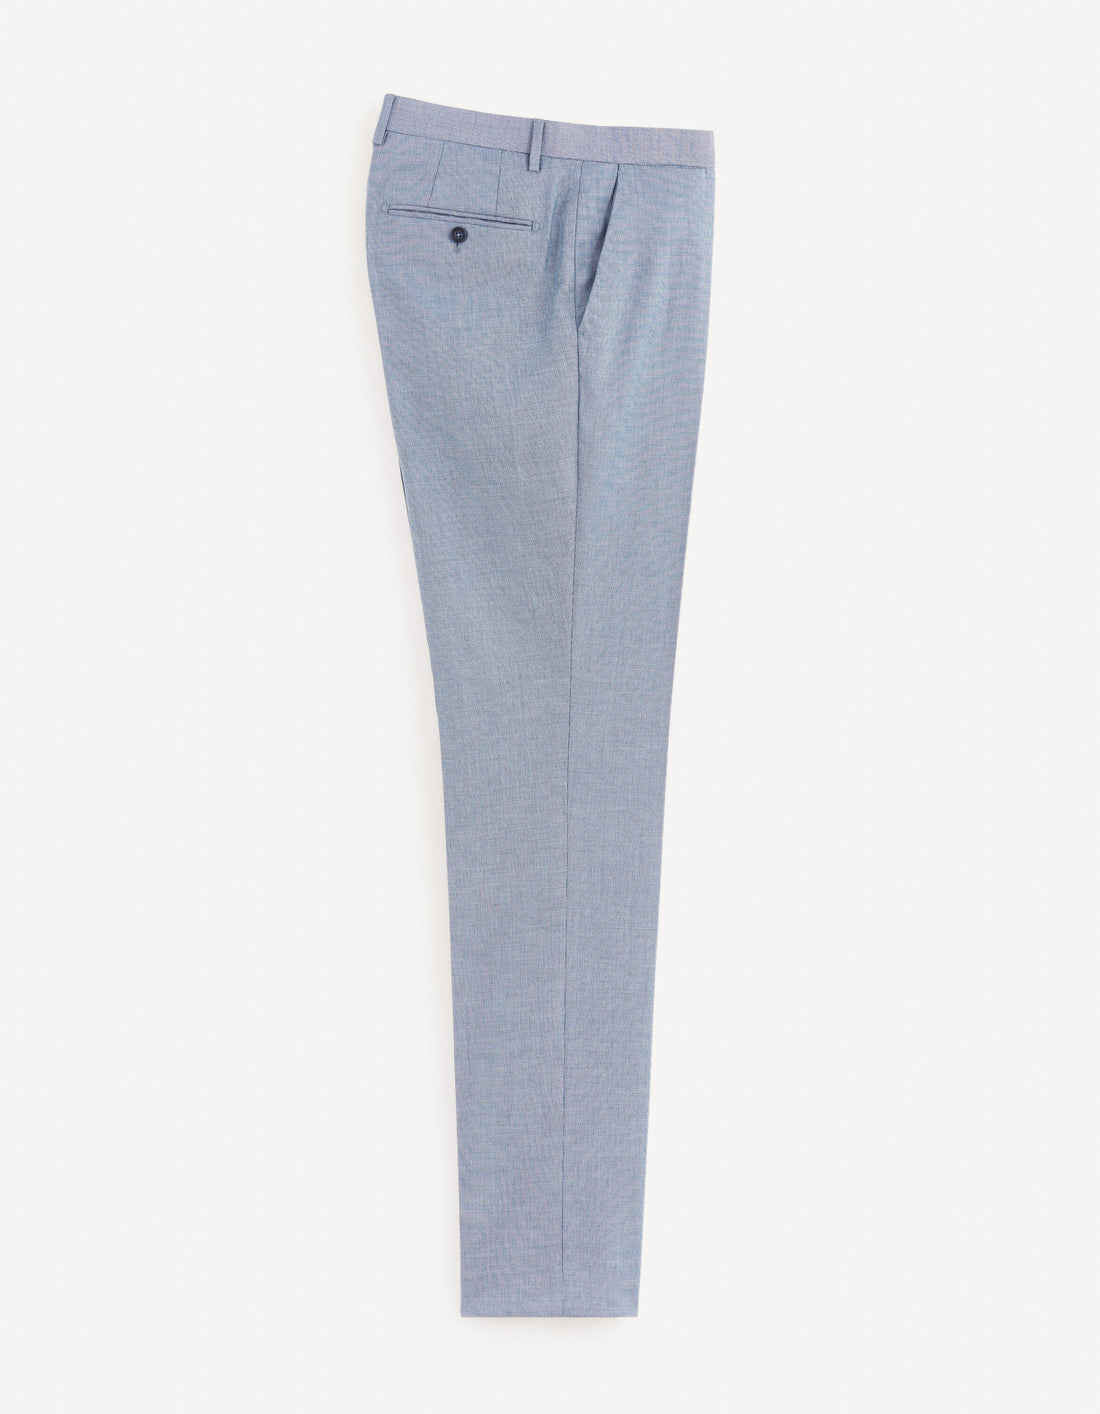 Mikro Slim Suit Trousers - Sky Blue_DOMIKRO_BLEU CIEL_01